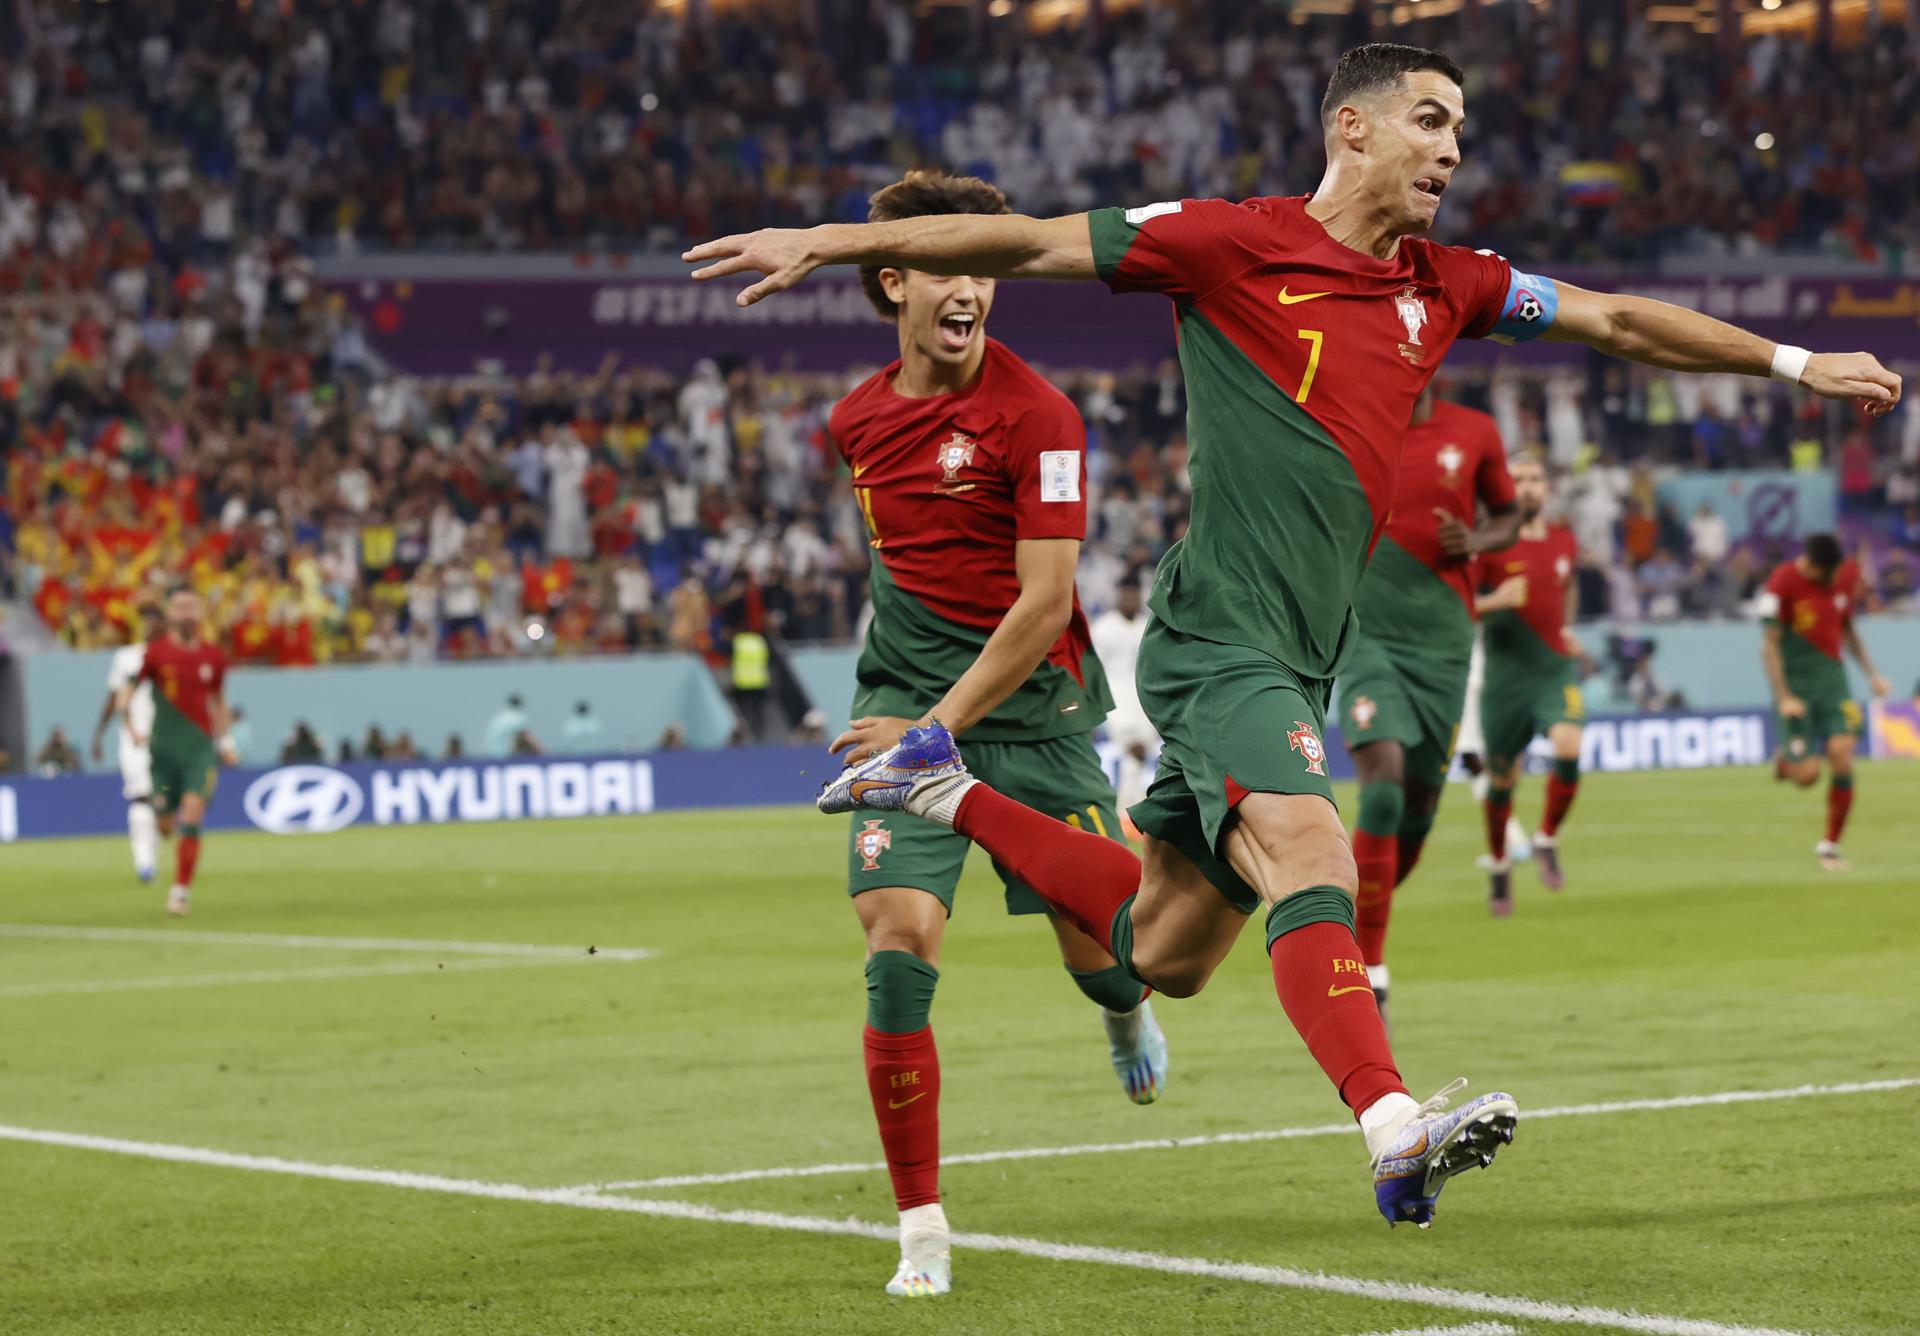 Jugadores portugueses se rinden ante Cristiano Ronaldo: “Es un sueño jugar con él”